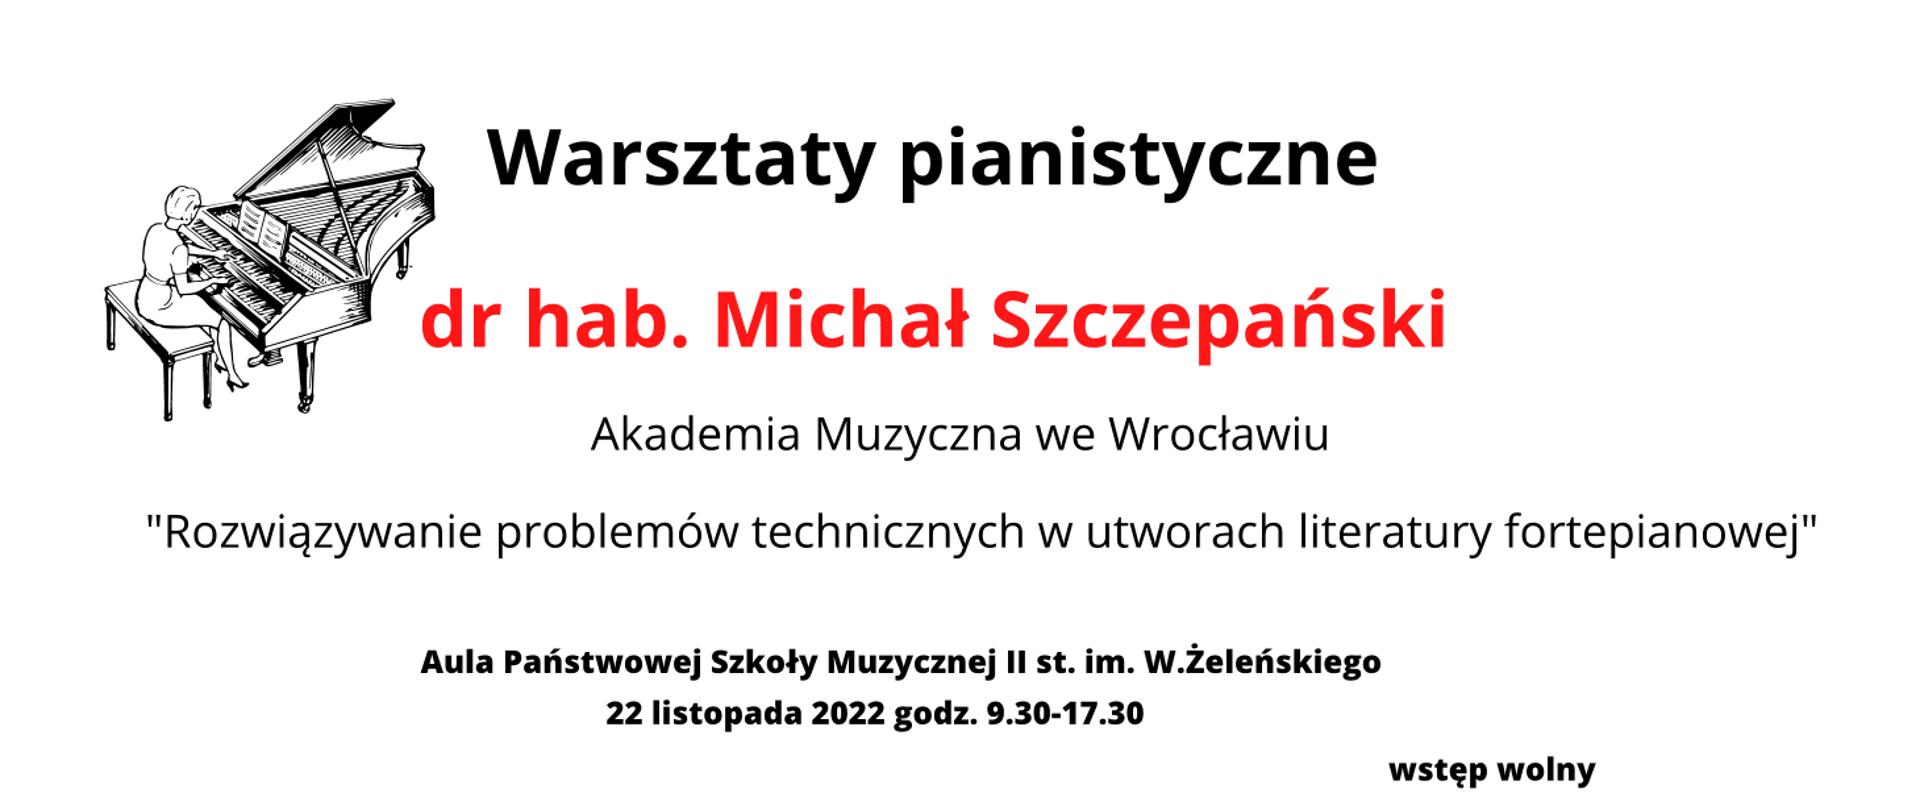 Zdjęcie na białym tle tekst warsztaty pianistyczne dr hab. Michał Szczepański Akademia Muzyczna we Wrocławiu